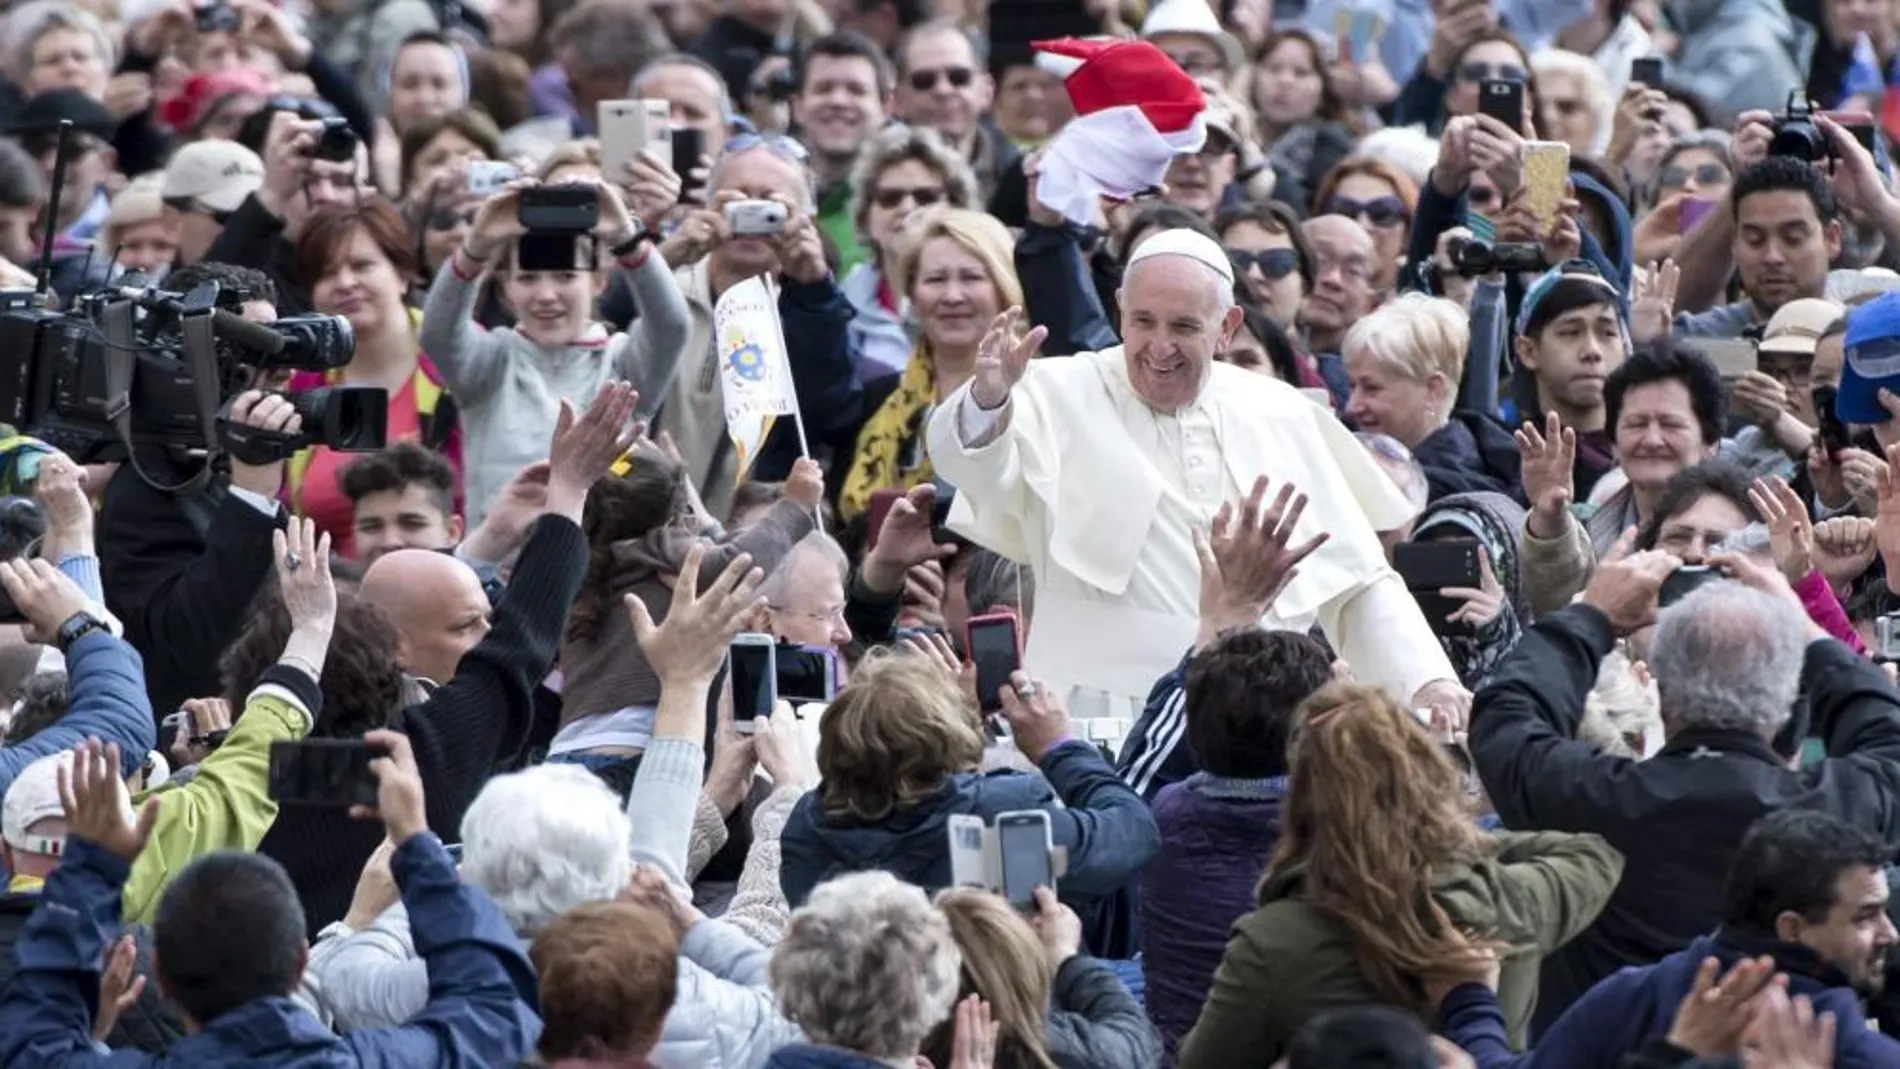 El Papa Francisco saluda a su llegada a una audiencia general celebrada en la Plaza de San Pedro del Vaticano, hoy